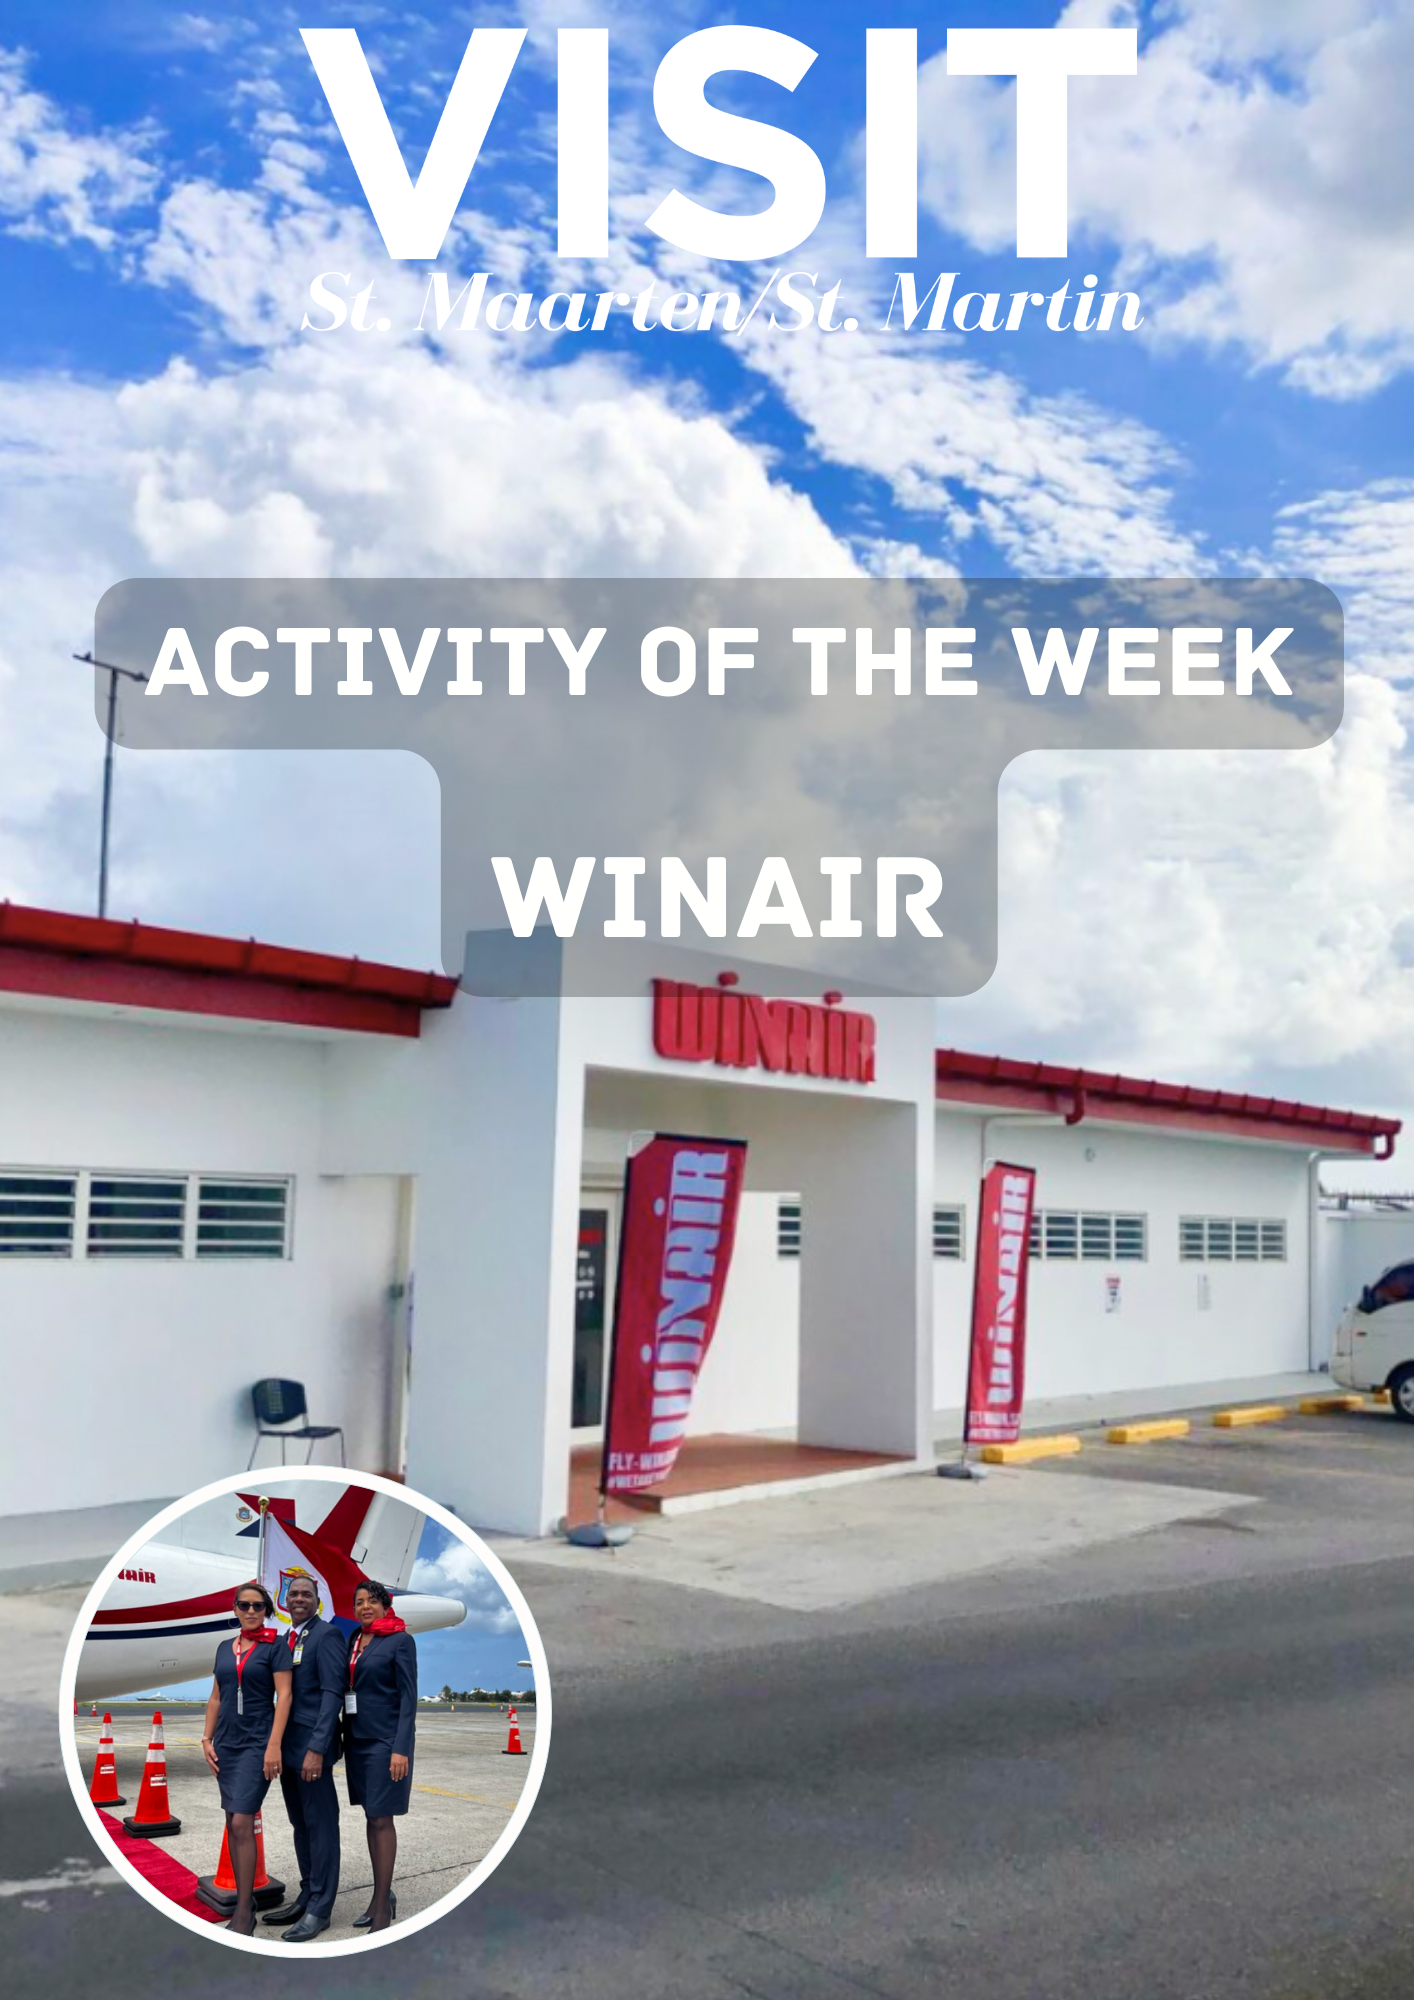 Winair is the st maarten activity of the week